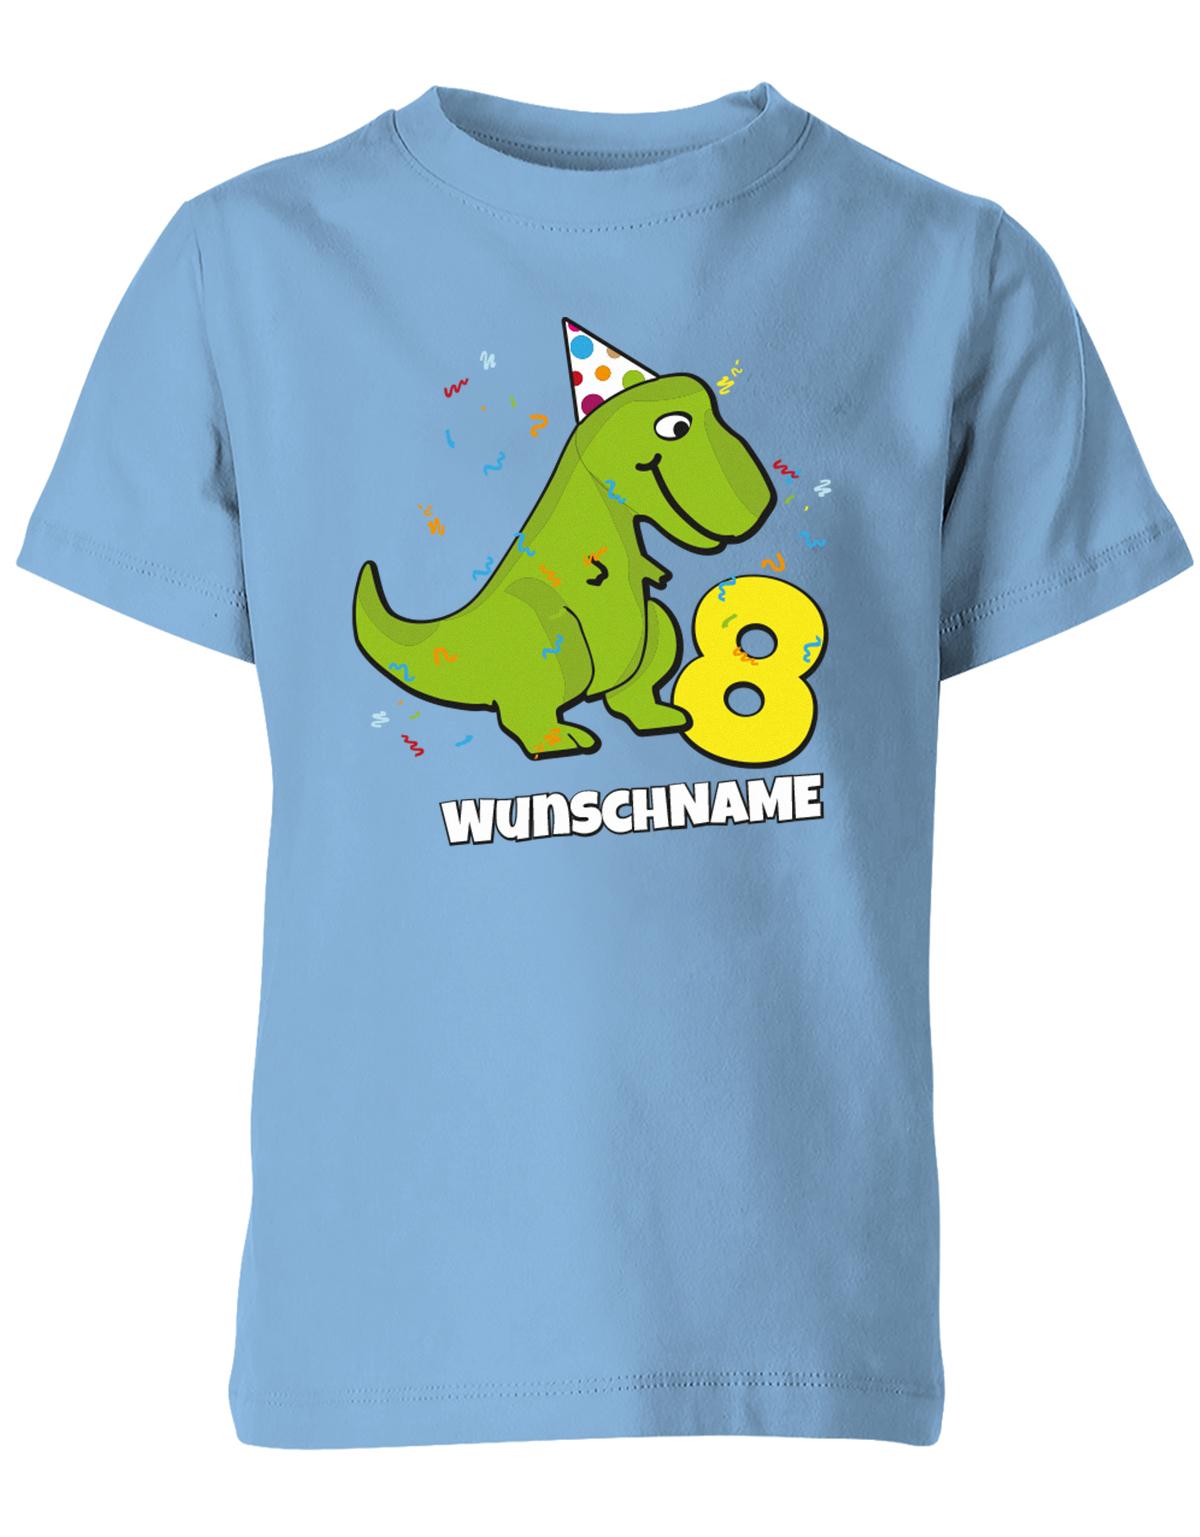 ich-bin-8-Dinosaurier-t-rex-wunschname-geburtstag-kinder-shirt-hellblau